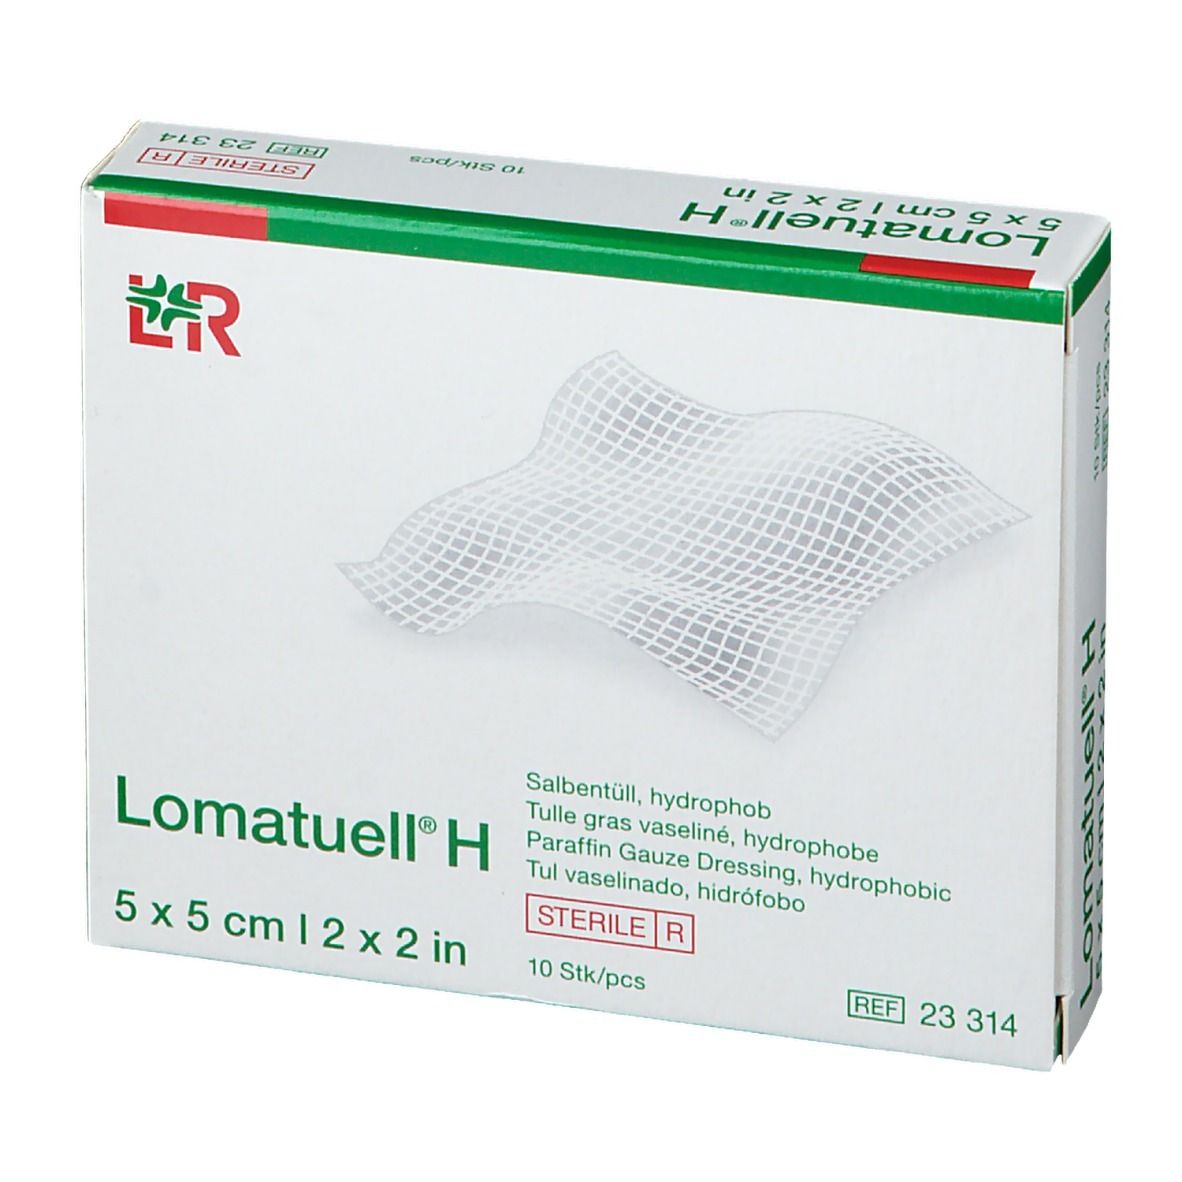 Lohmann & Rauscher Lomatuell® H 5 x 5cm